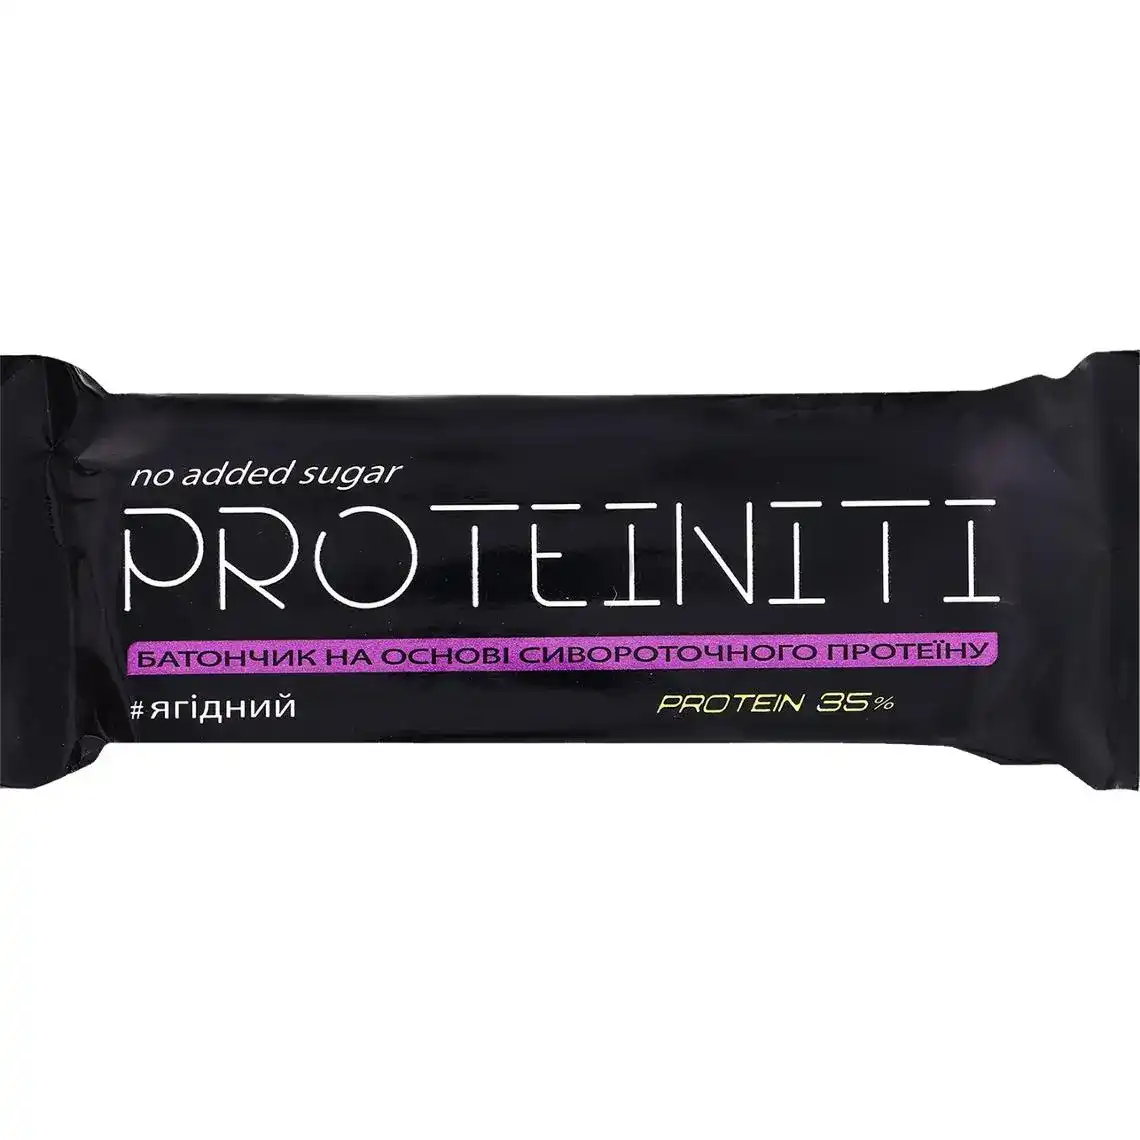 Батончик Proteiniti Ягідний 40 г